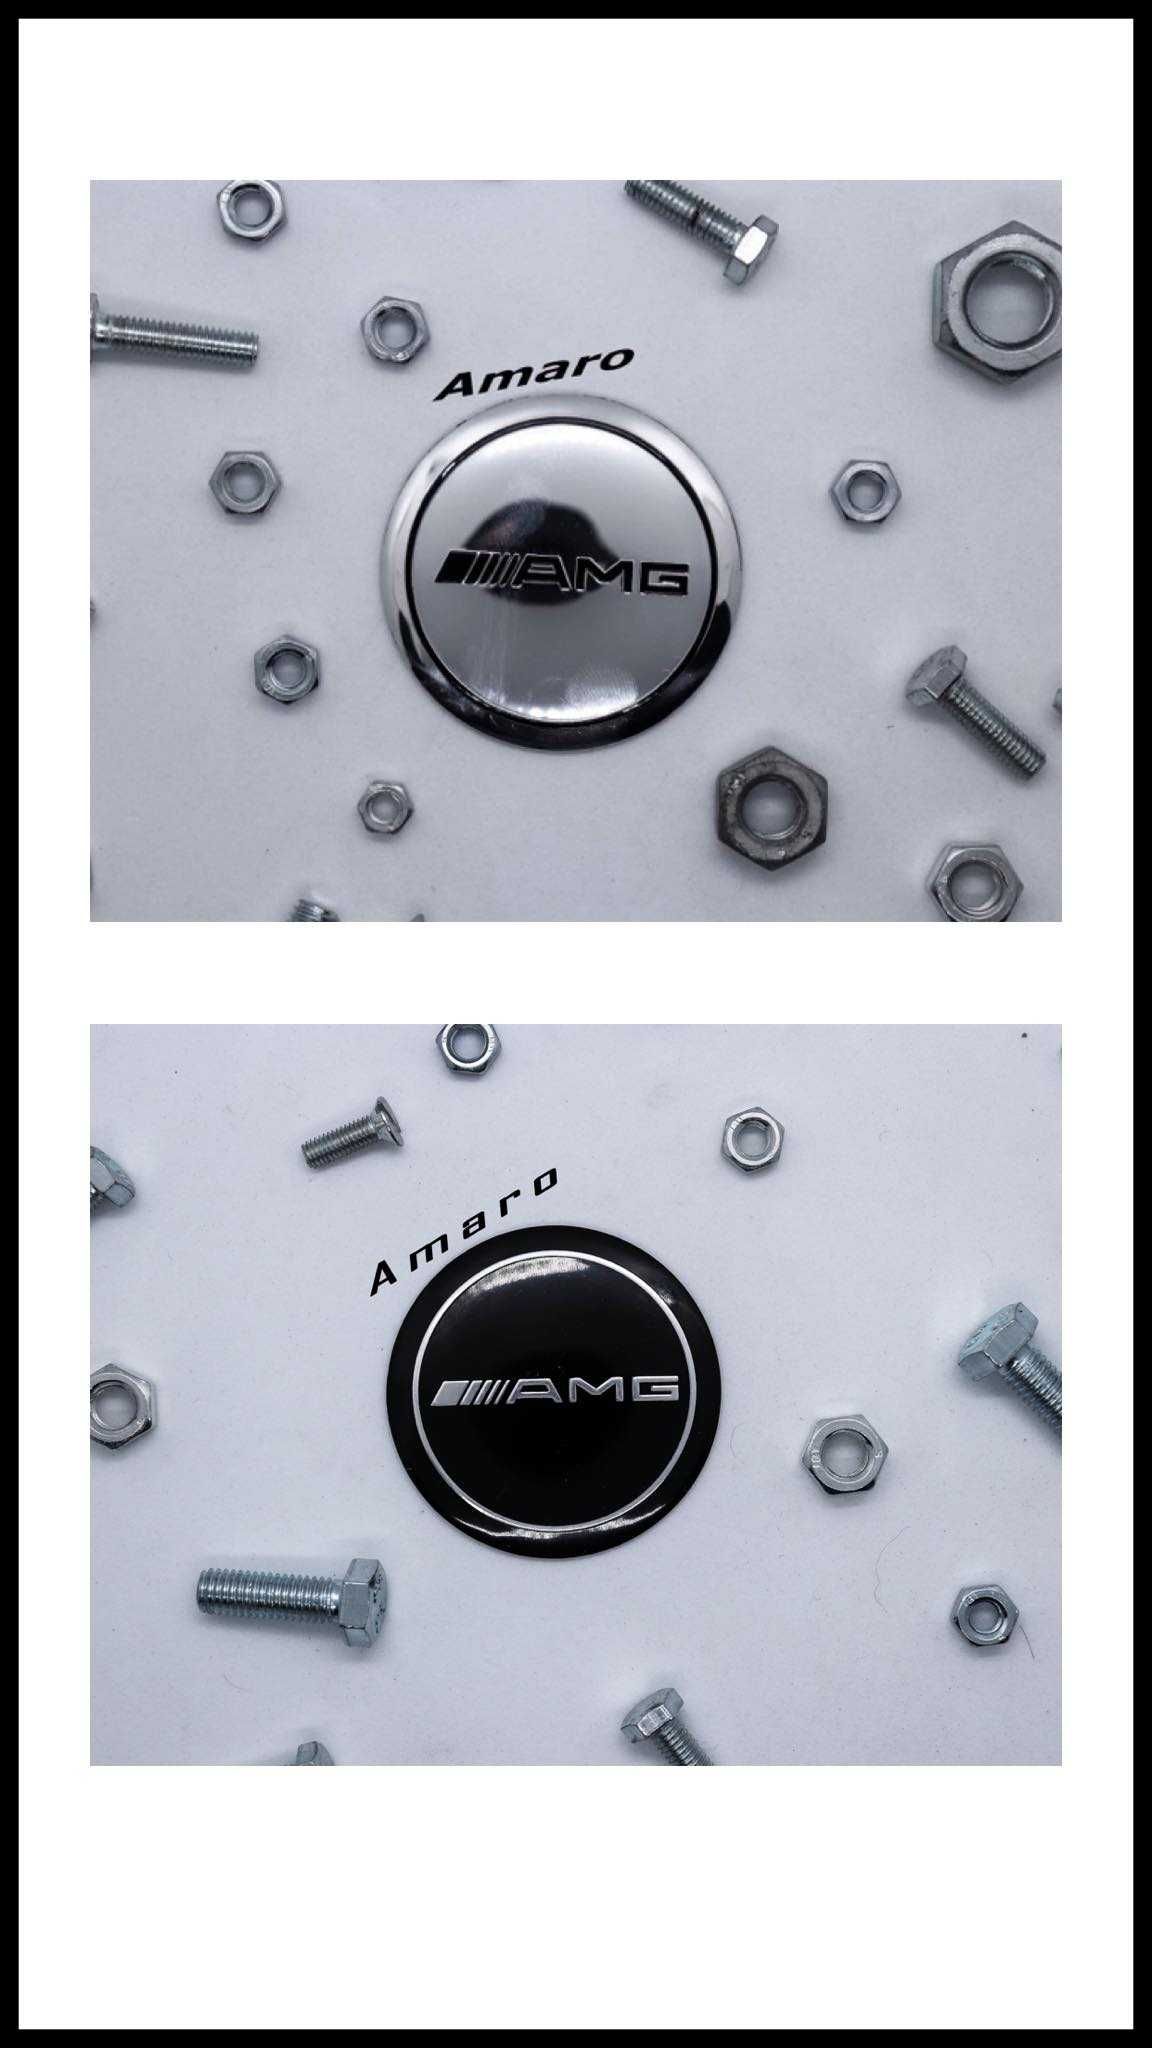 4 Símbolos/Logos para Jantes em Alumínio Merdeces AMG (2 Cores)| NOVOS